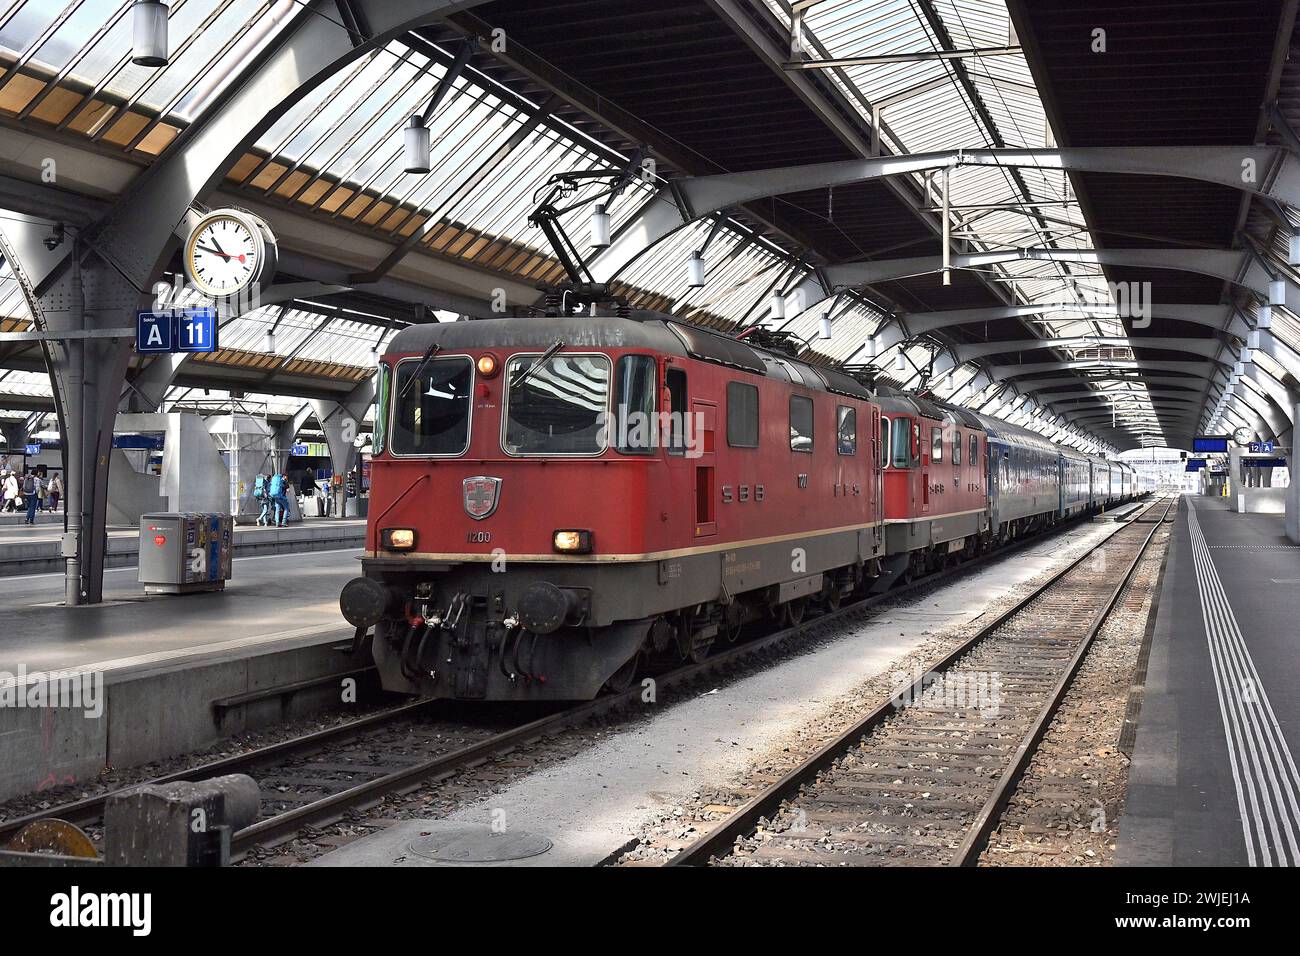 Svizzera, Zurigo: Treno rosso delle Ferrovie federali Svizzere al binario. Locomotiva elettrica re 420, originariamente re 4/4, UIC RE 420 Foto Stock